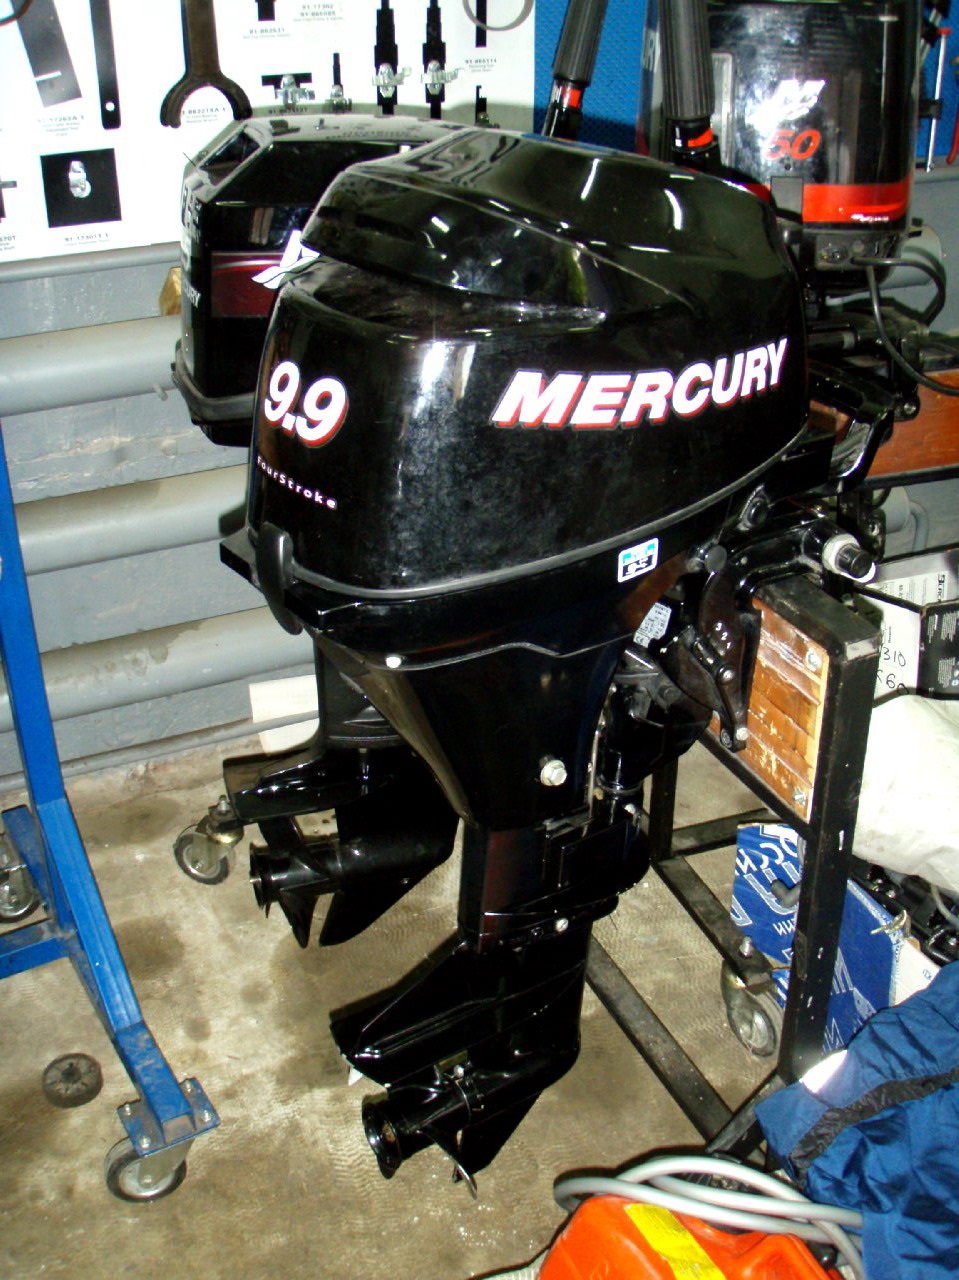 Куплю плм б у. Лодочный мотор Меркурий 9.9. Лодочный мотор Меркури 9.9 4 такта. Mercury мотор Mercury 9.9. Лодочный мотор Mercury f9.9m.